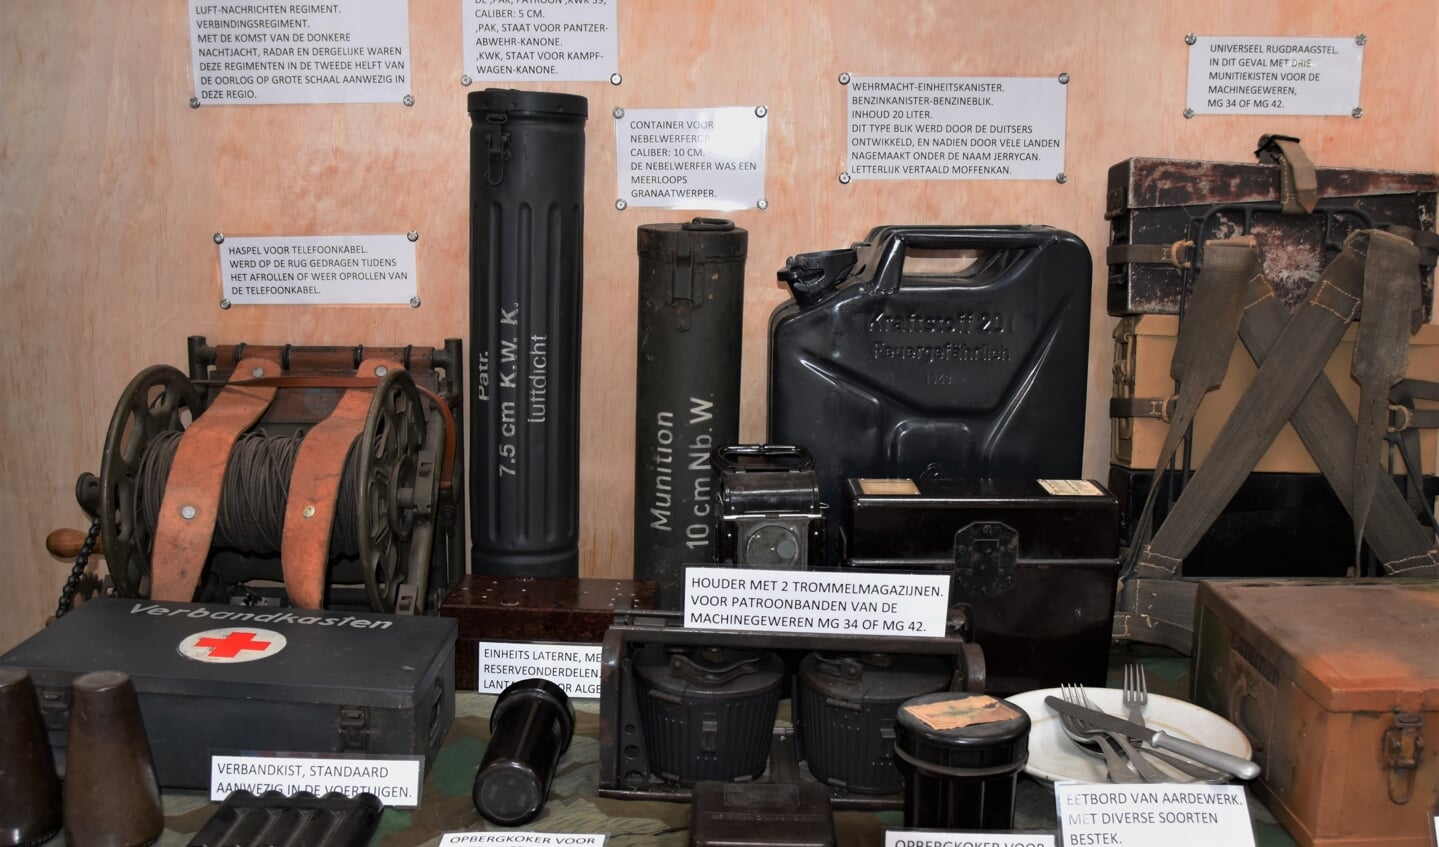 Voor deze en nog veel meer van al zijn verzamelde objecten over Zelhem in de Tweede Oorlog zoekt Bert Schieven expositieruimte in de voormalige gemeente Zelhem. Foto: Alice Rouwhorst